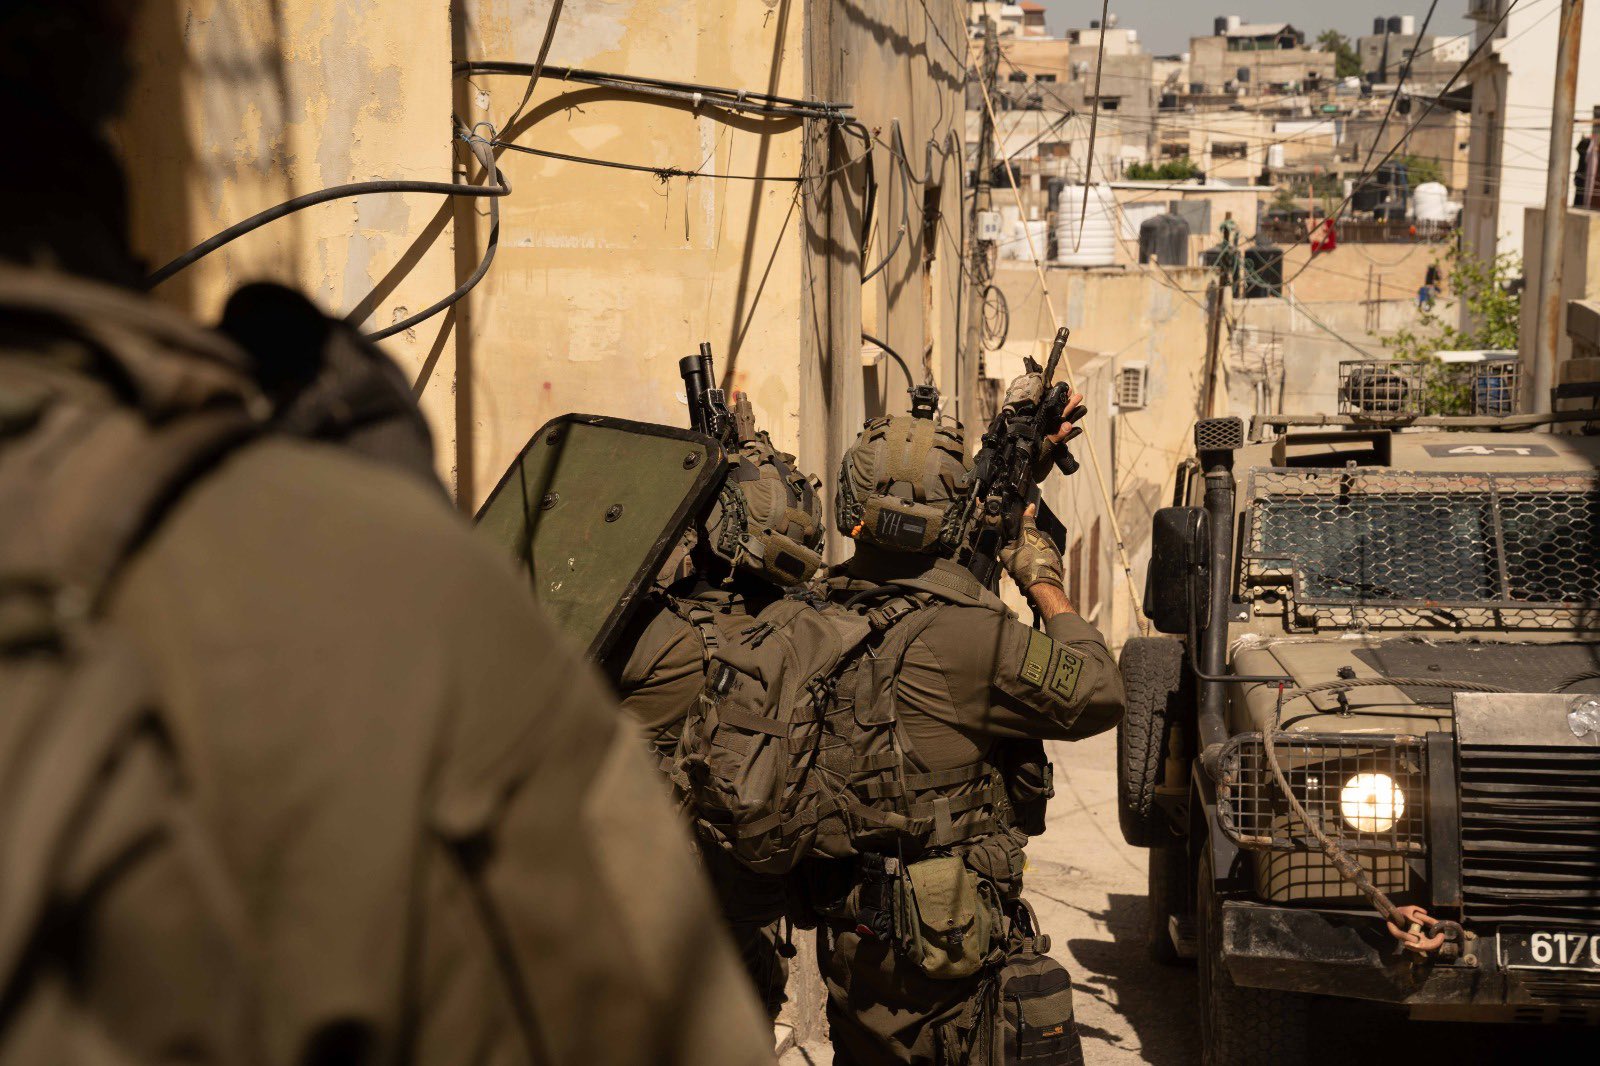 Γάζα: Ο στρατός του Ισραήλ ανακοίνωσε ότι θα εφαρμόζει καθημερινά «τακτική παύση» των επιχειρήσεων στα νότια